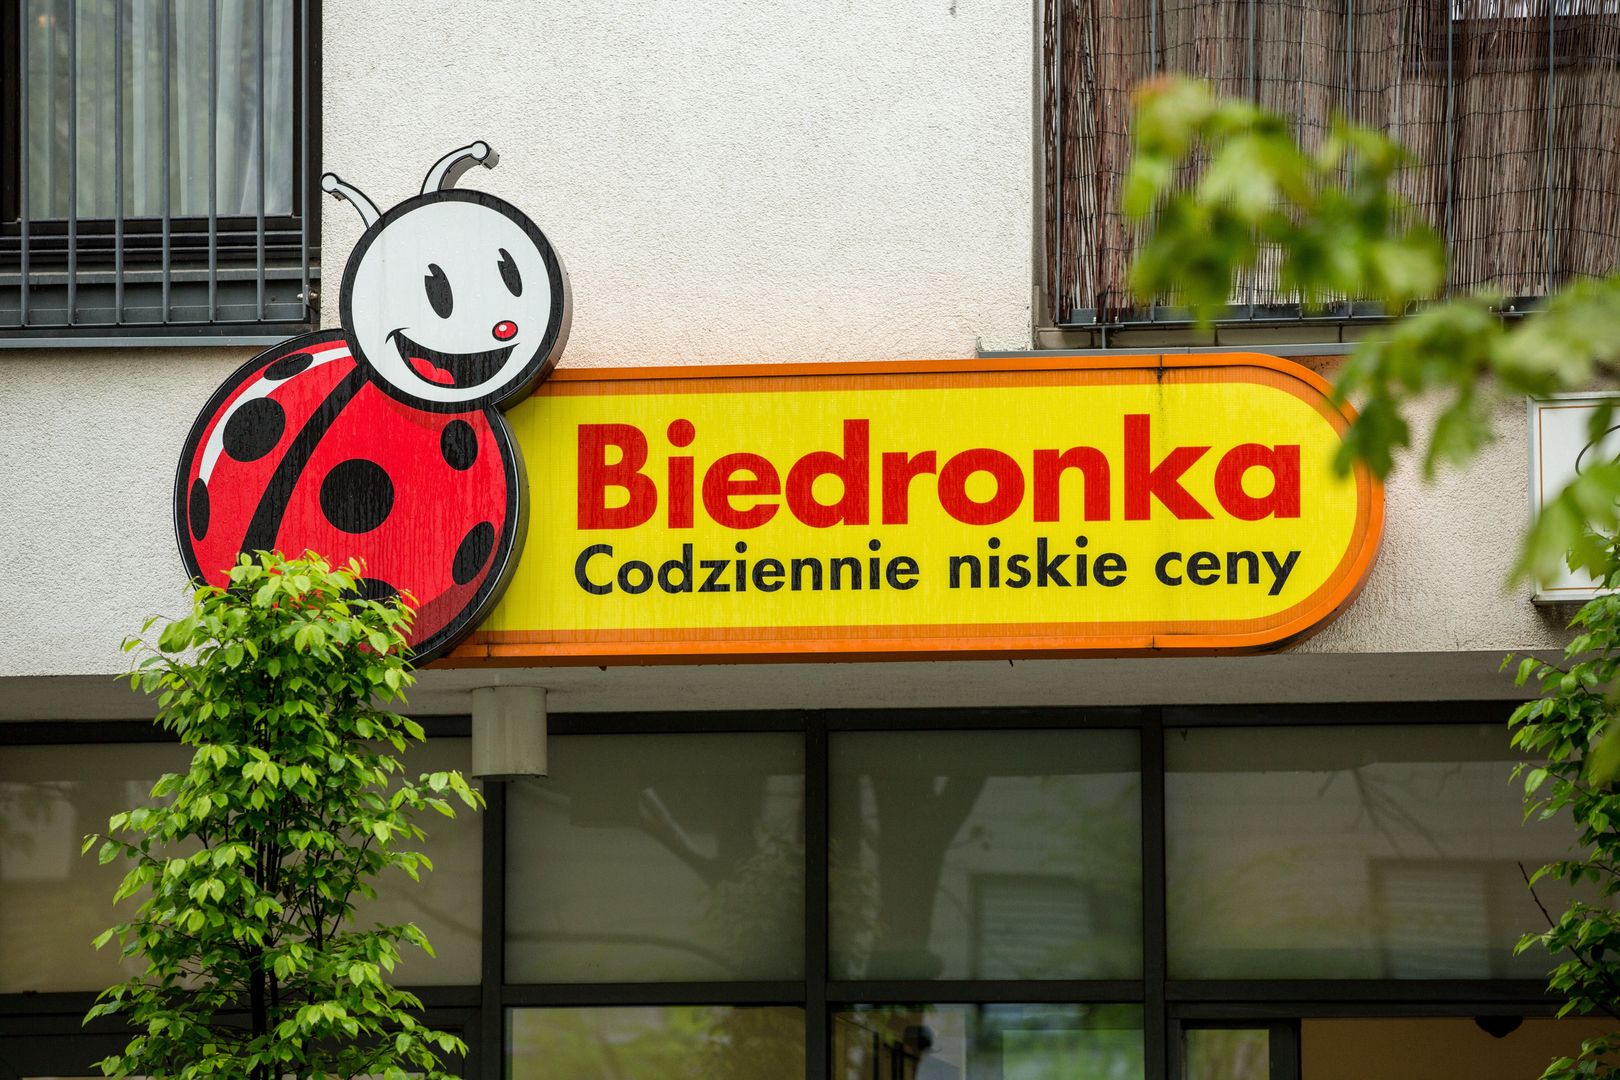 Sukienki polskiej marki w Biedronce. Można je dostać za grosze